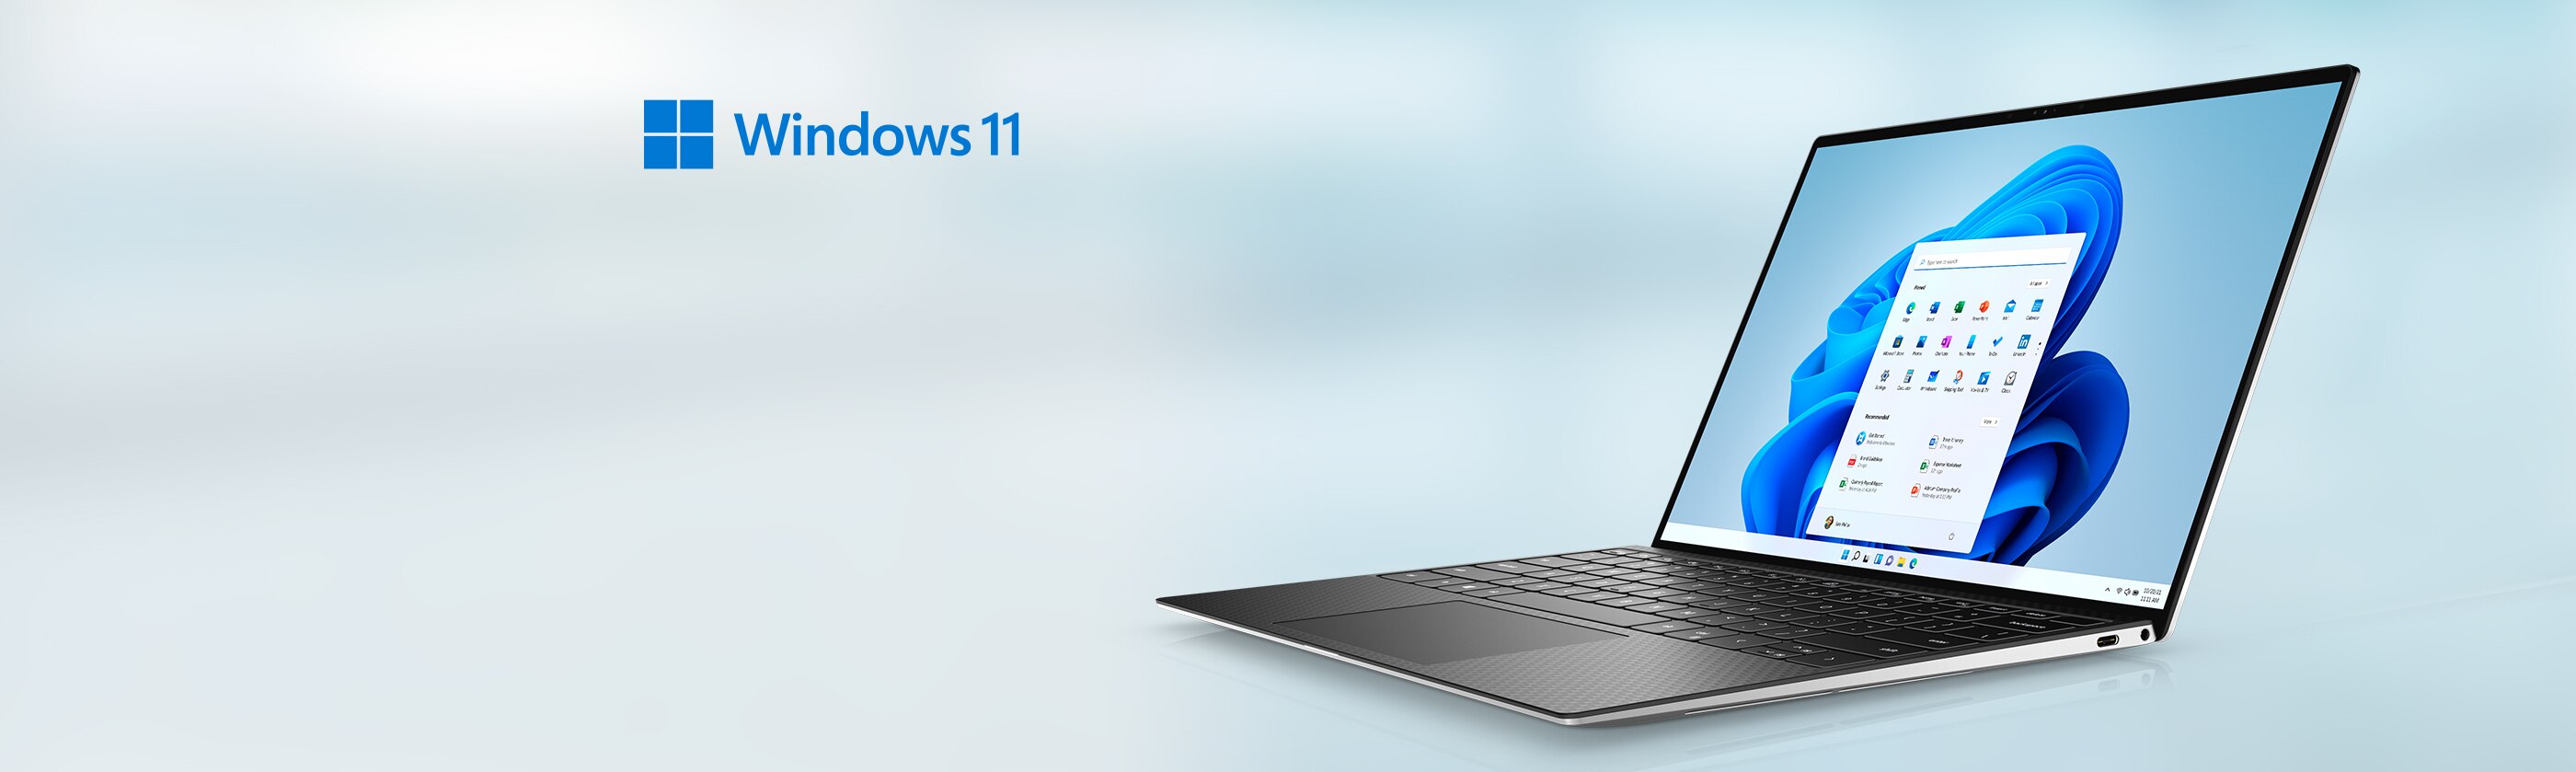 Nâng cấp máy tính của bạn lên phiên bản mới của hệ điều hành Windows sẽ mang lại cho bạn nhiều tính năng tuyệt vời. Windows 11 giờ đây đã có sẵn và bạn có thể tìm hiểu thêm về nó bằng cách xem hình ảnh liên quan.